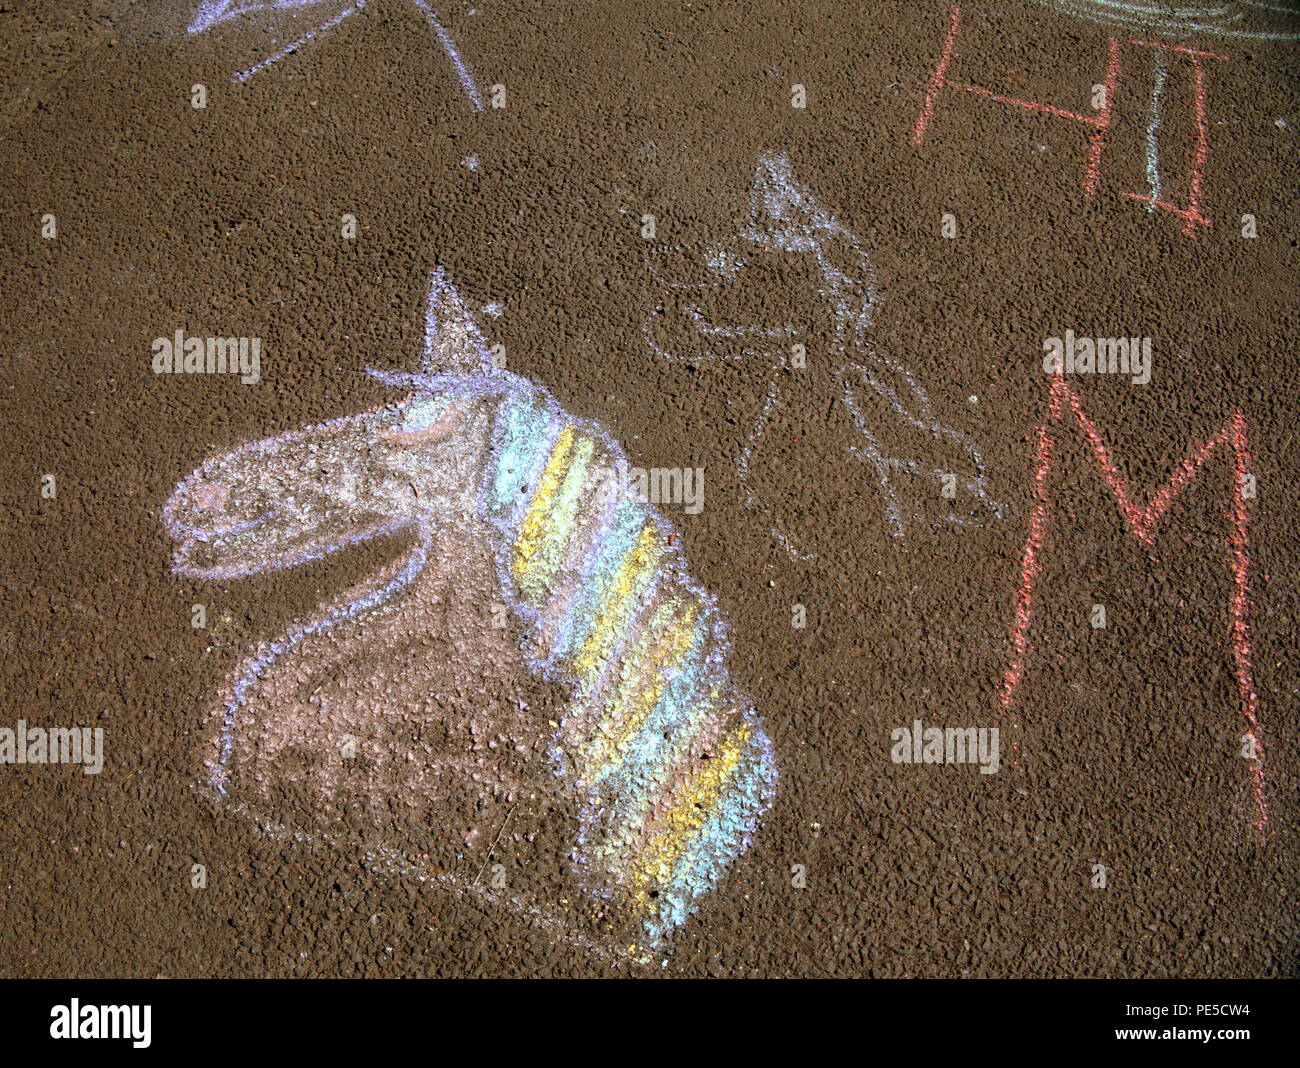 Los niños de tiza del dibujo de un unicornio sobre asfalto espacio de copia Foto de stock